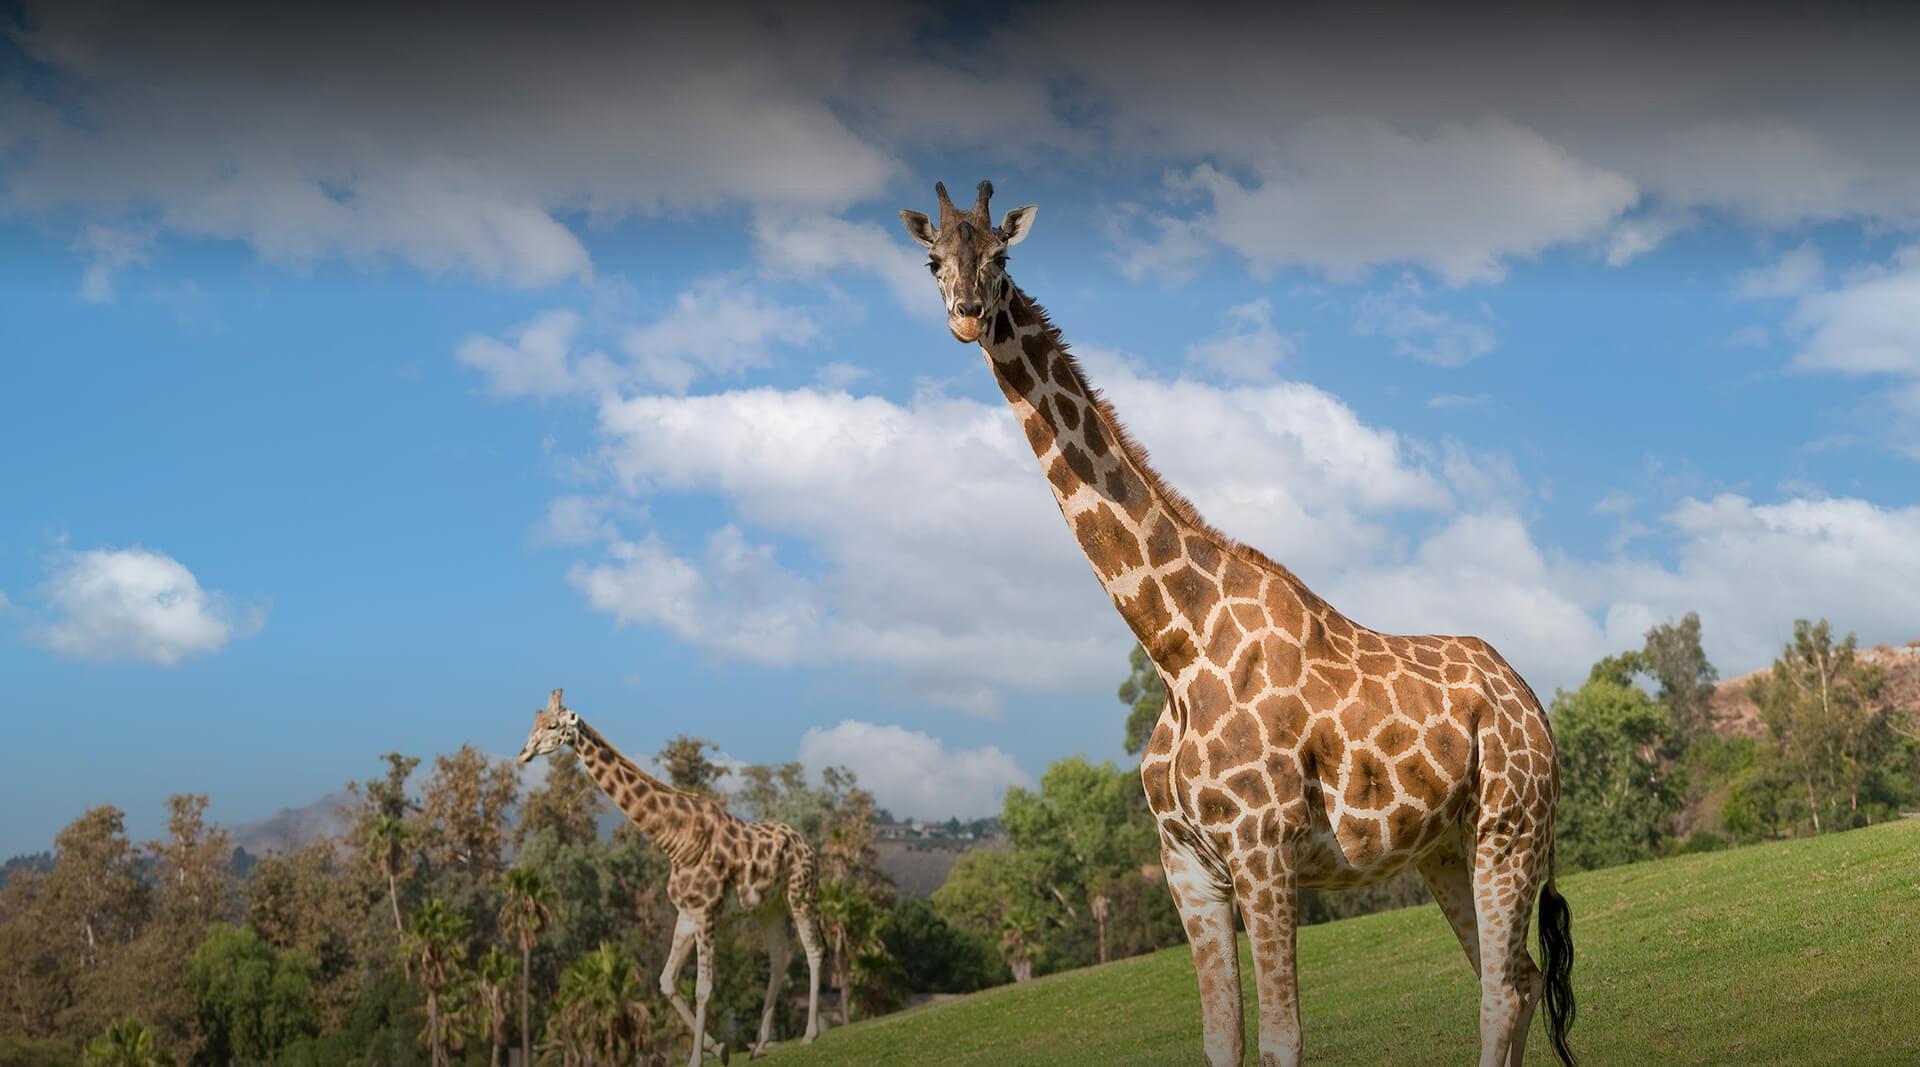 Giraffes against blue sky.